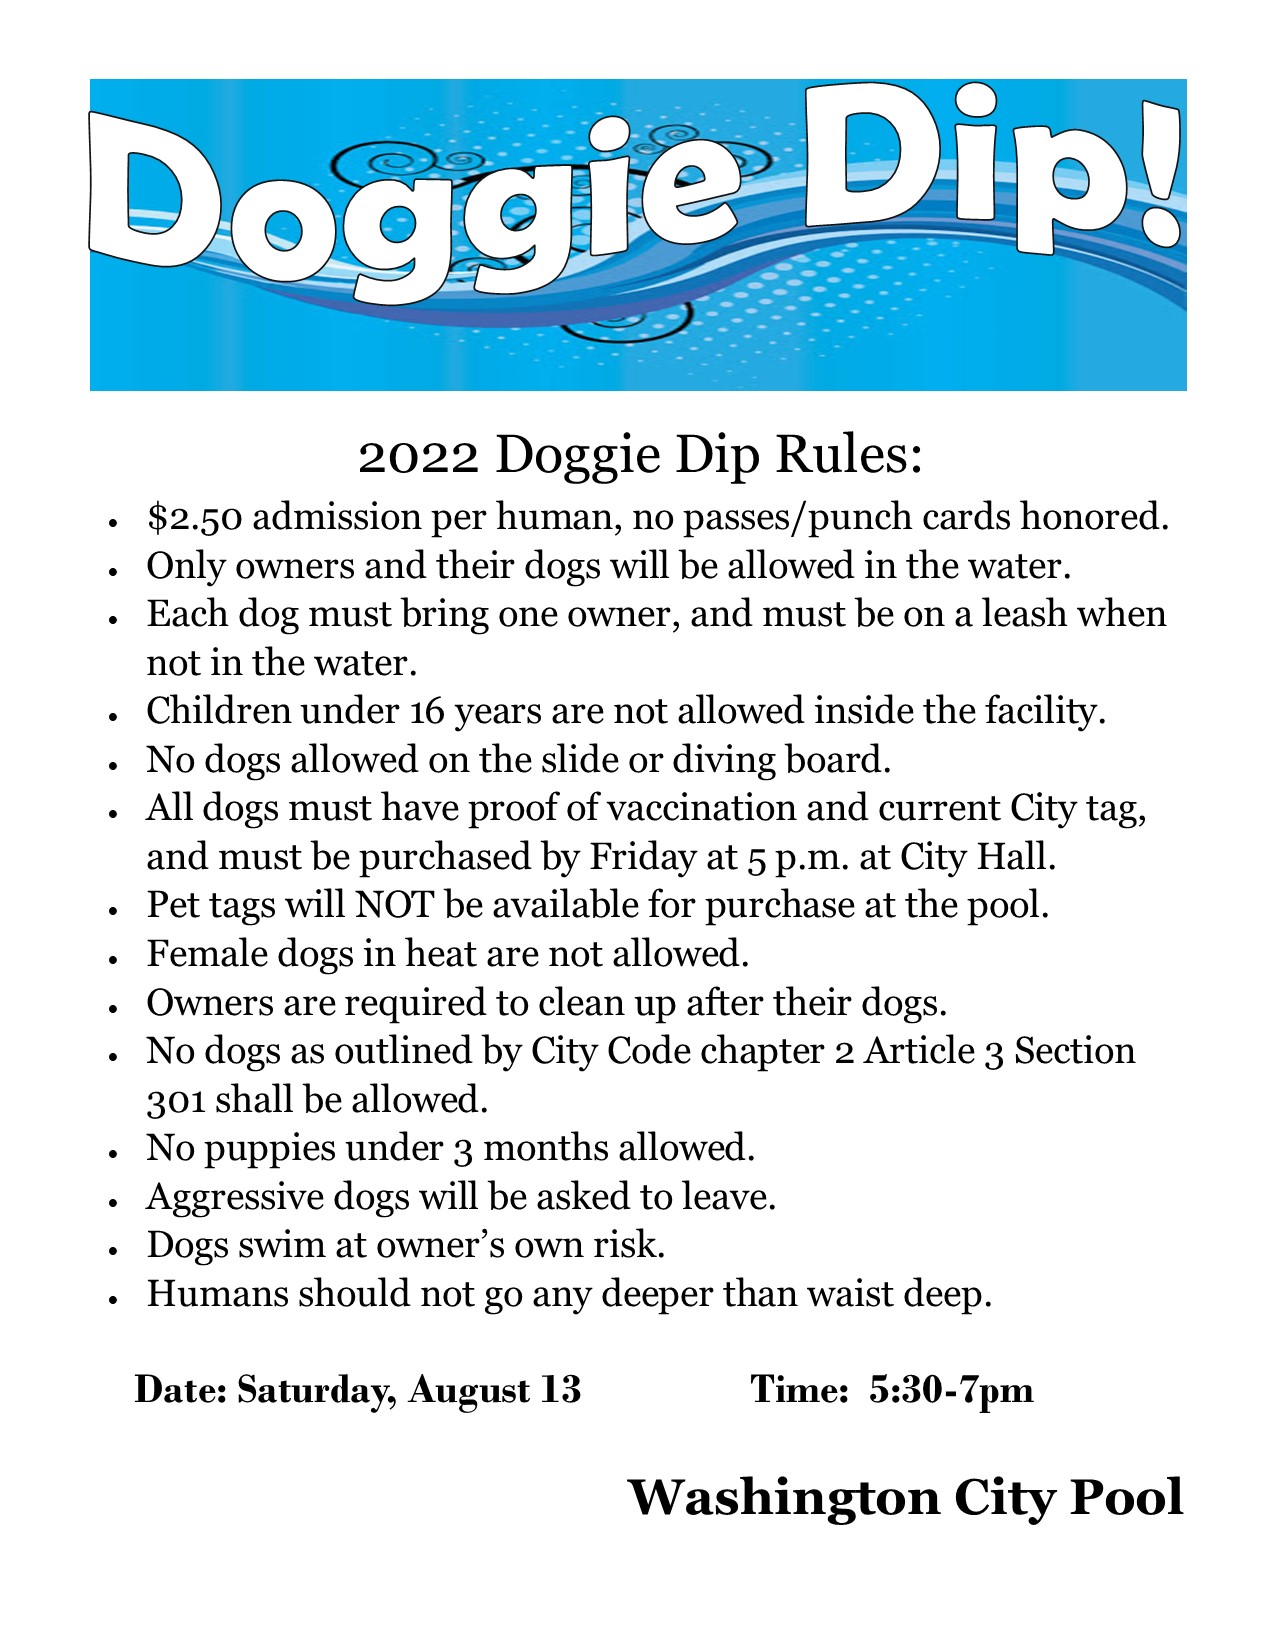 Doggy Dip flyer